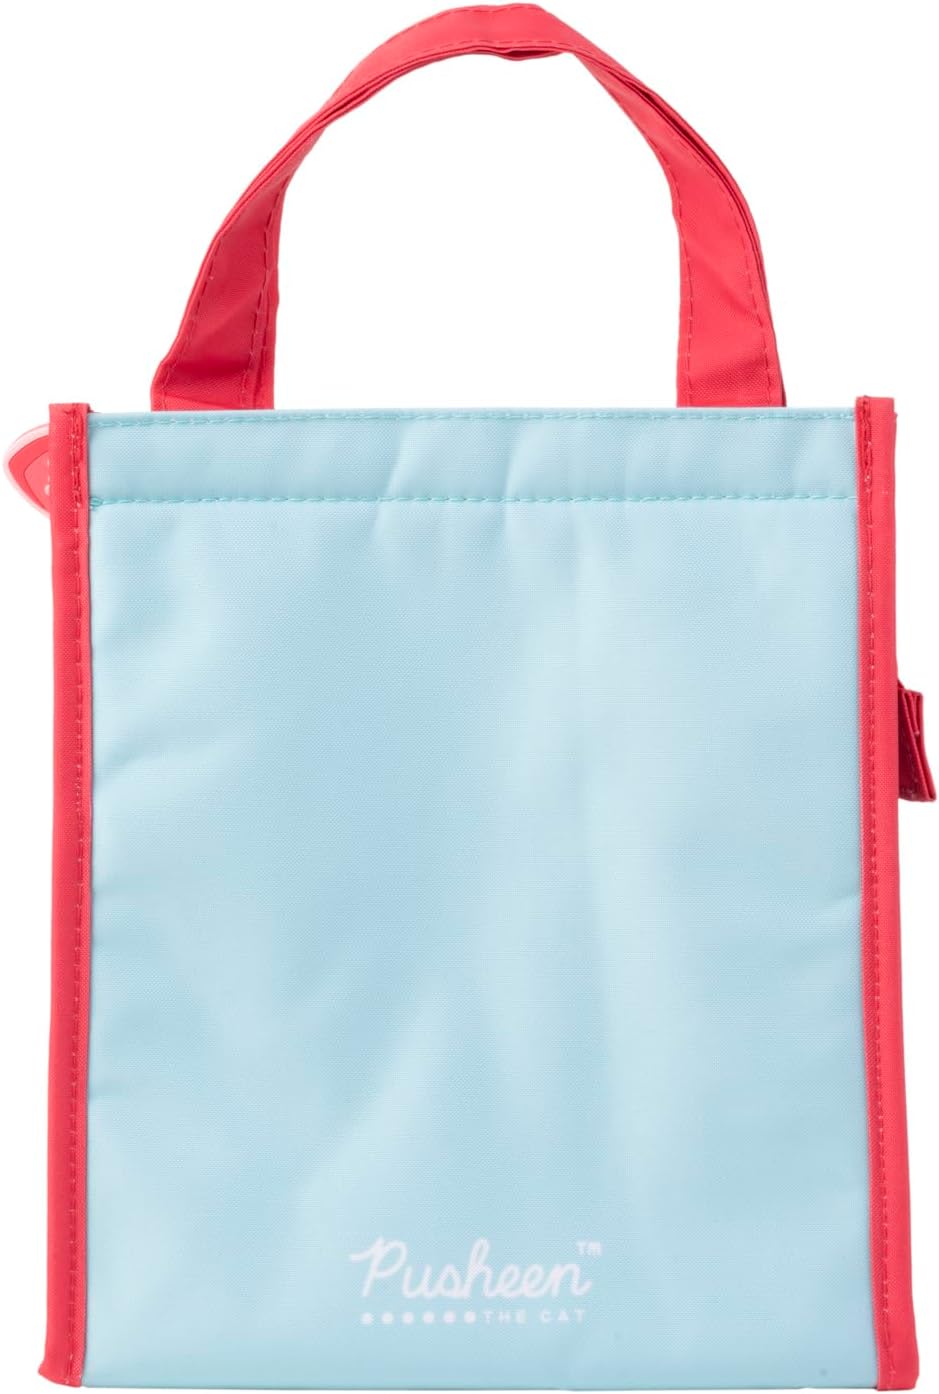 Grupo Erik Pusheen Lunch Bag | 8 x 9 x 5 inches - 20 x 23 x 13 cm | Insulated Lunch Bag